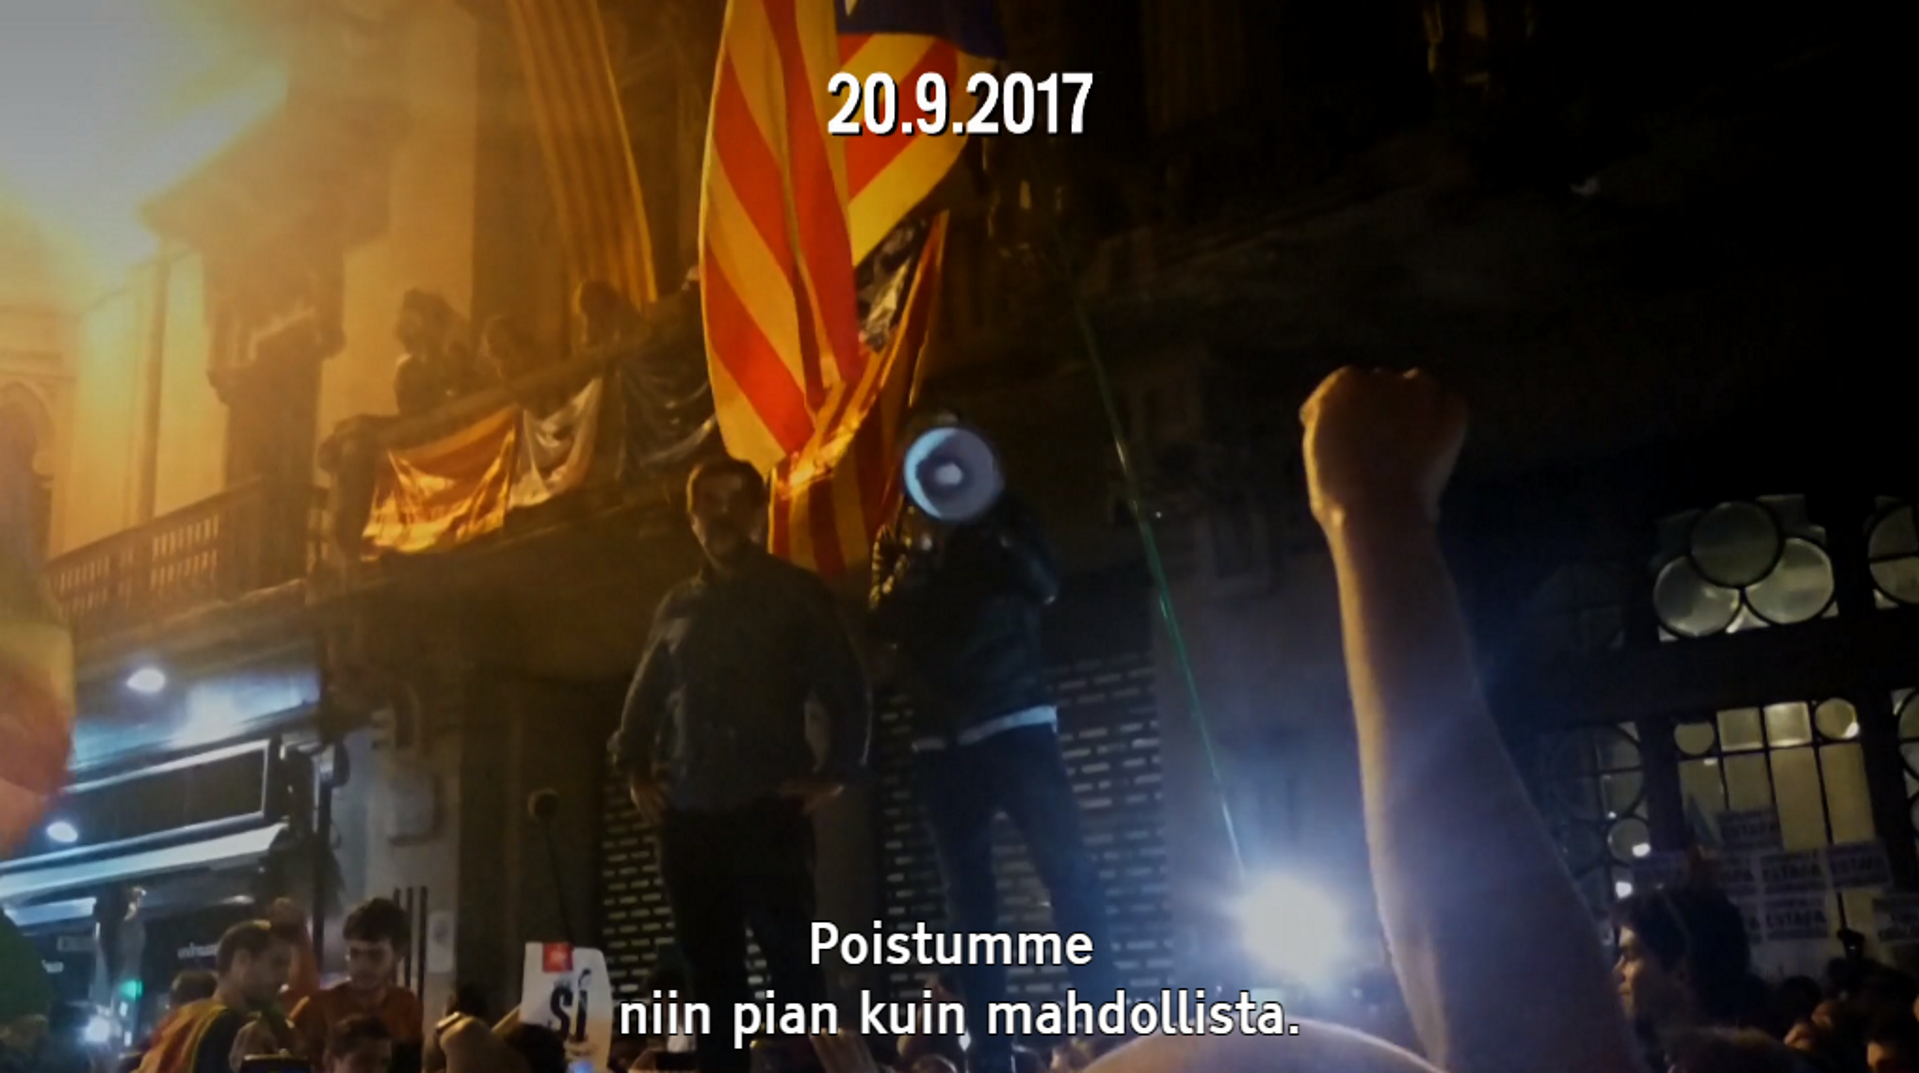 La televisión finlandesa, contundente al narrar "la venganza española" en Catalunya